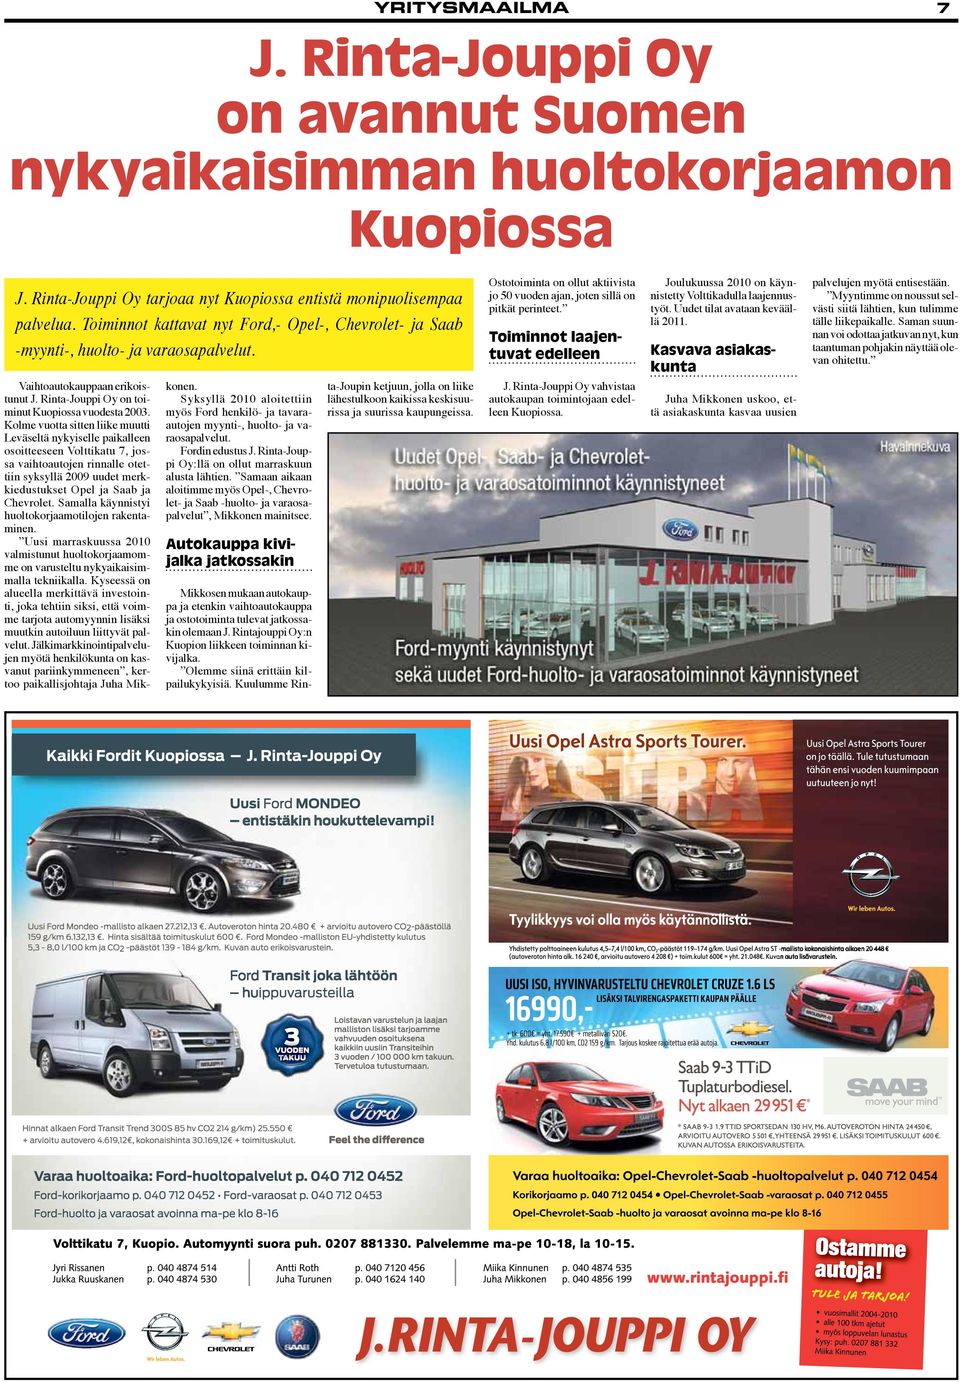 Kolme vuotta sitten liike muutti Leväseltä nykyiselle paikalleen osoitteeseen Volttikatu 7, jossa vaihtoautojen rinnalle otettiin syksyllä 2009 uudet merkkiedustukset Opel ja Saab ja Chevrolet.